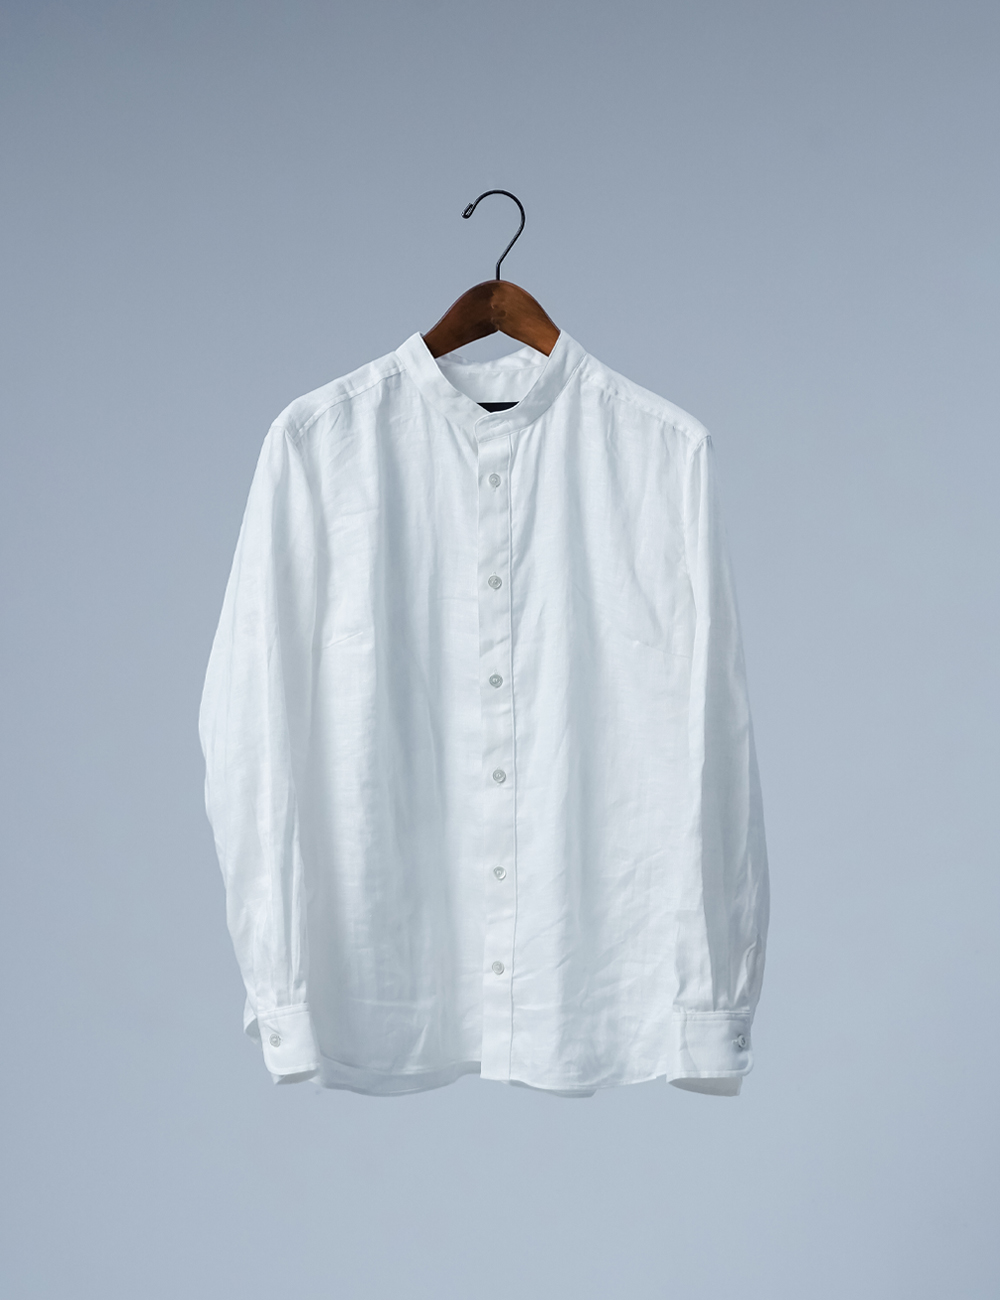 【リネンシャツ】数量限定！見習い製作品 手もみスタンドカラーシャツ / ホワイト t031c-wht1